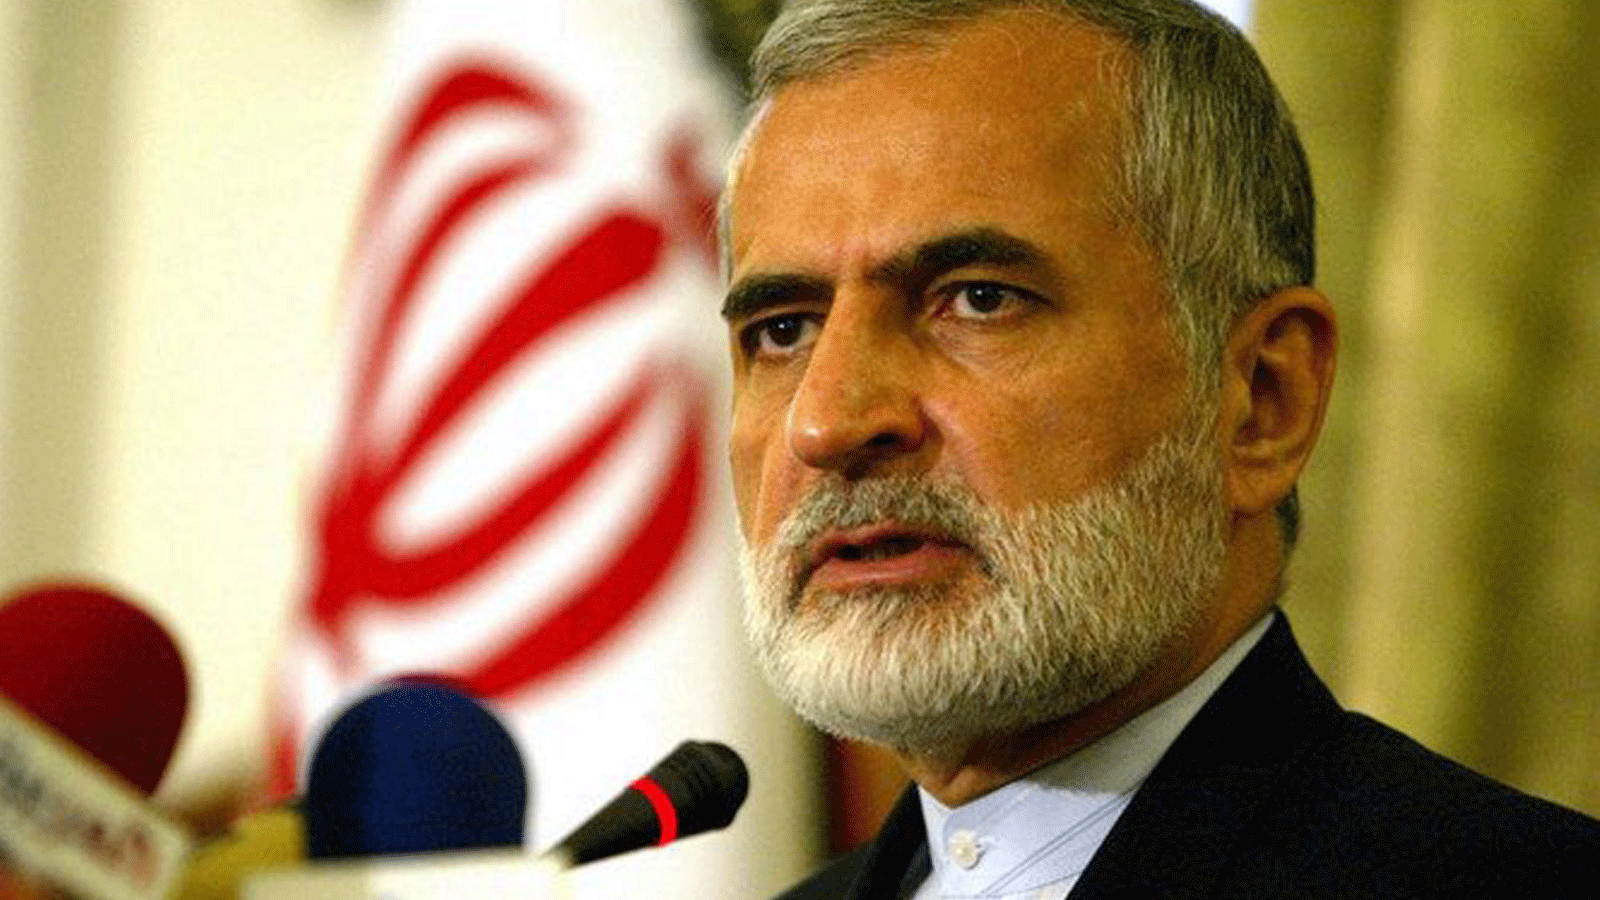 رئيس المجلس الاستراتيجي للعلاقات الخارجية الإيراني کمال خرازي، في صورة كان يتحدث خلالها إلى الصحافة في طهران، بصفته وزيراً للخارجية الإيرانية آنذاك. 19 حزيران/ يونيو 2005.